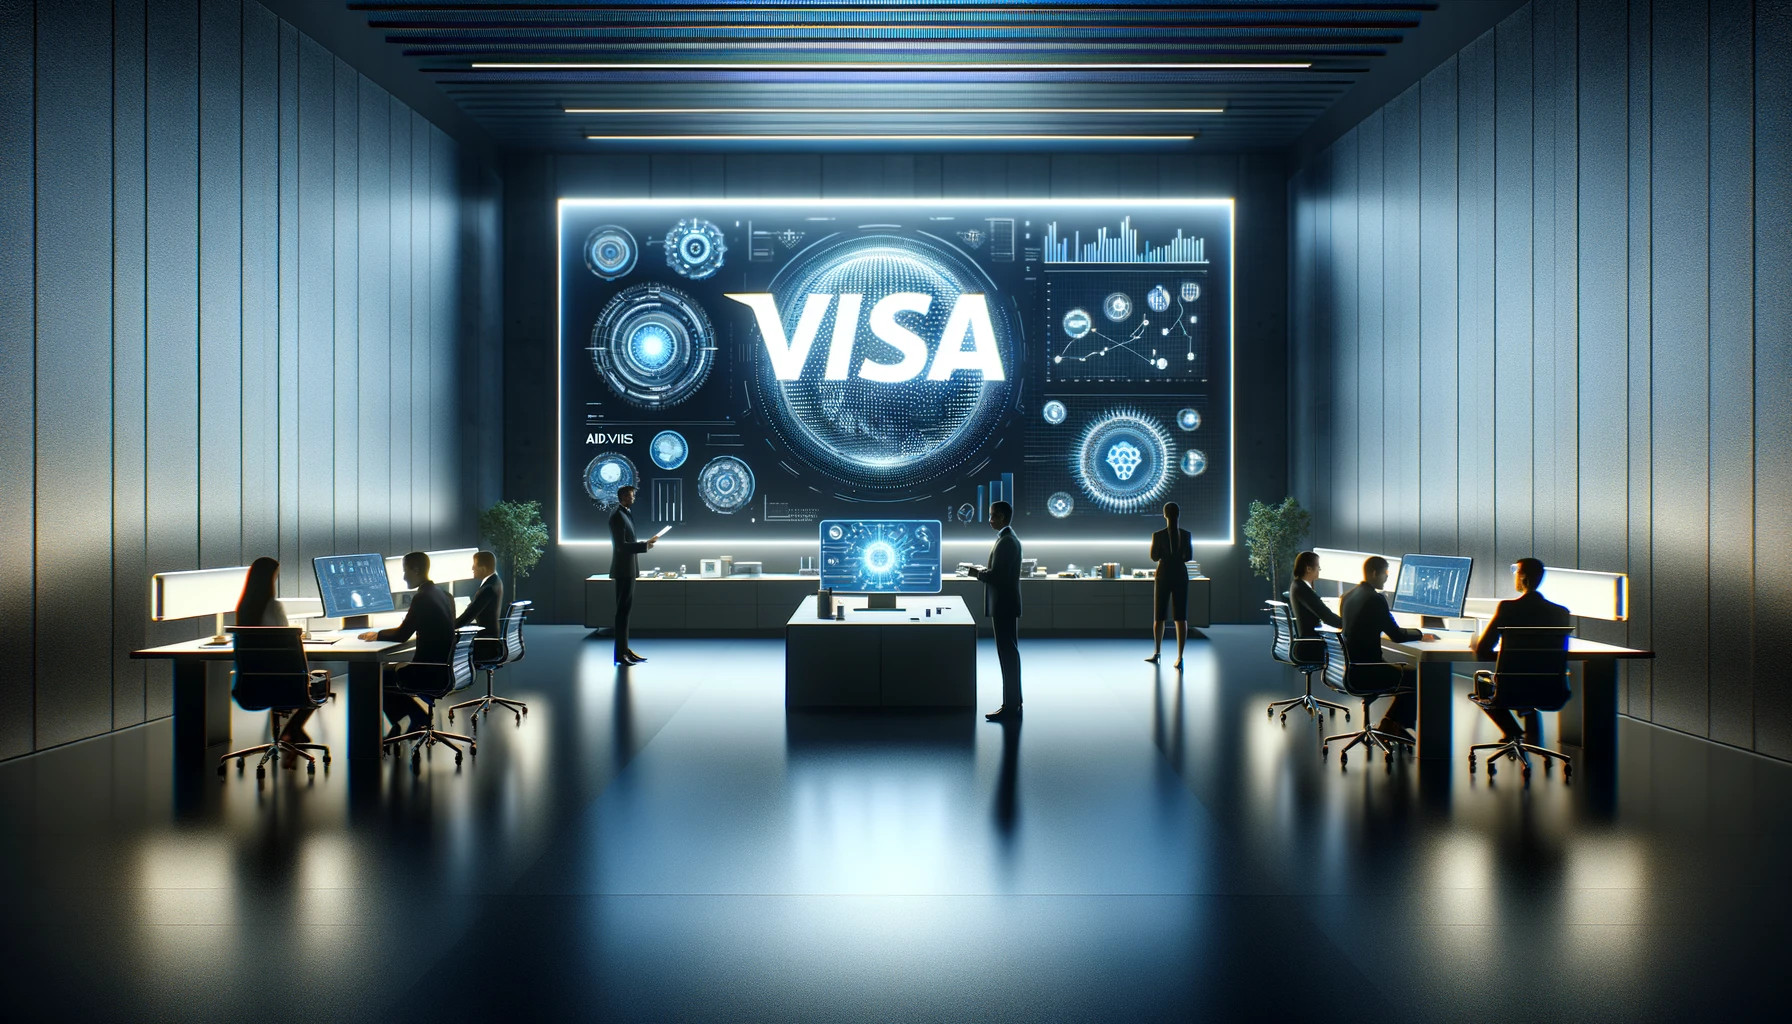 O Novo Serviço De Consultoria Em Ia Da Visa, Da Visa Consulting & Analytics, Tem Como Objetivo Desbloquear O Potencial Da Ia.